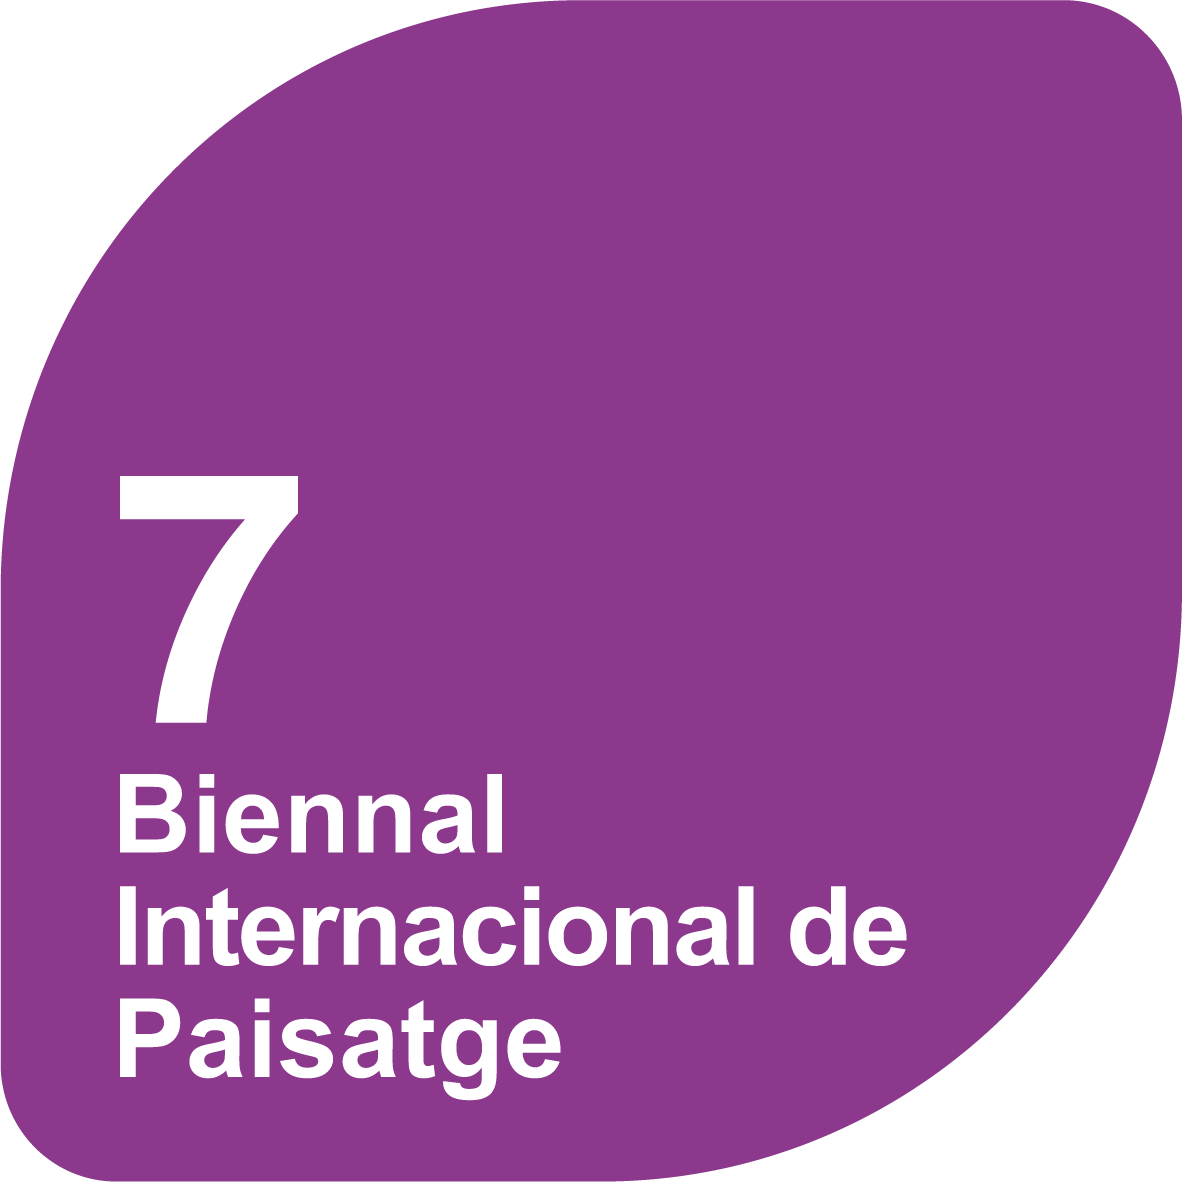 7a Biennal Internacional de Paisatge